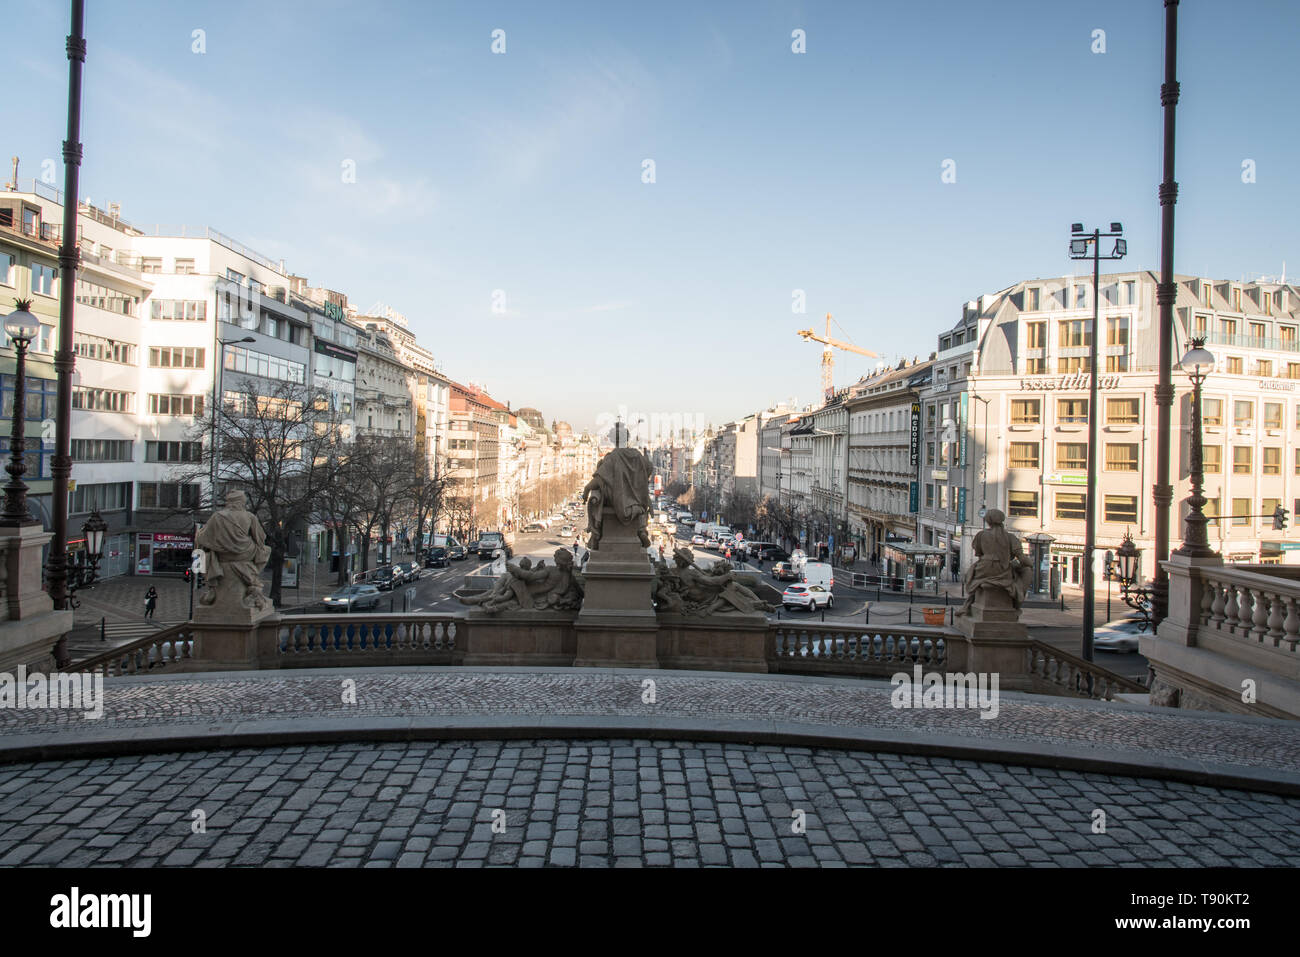 Vaclavske namesti square da Narodni muzeum ingresso in Praha città in Repubblica Ceca durante la bella mattina con cielo blu Foto Stock